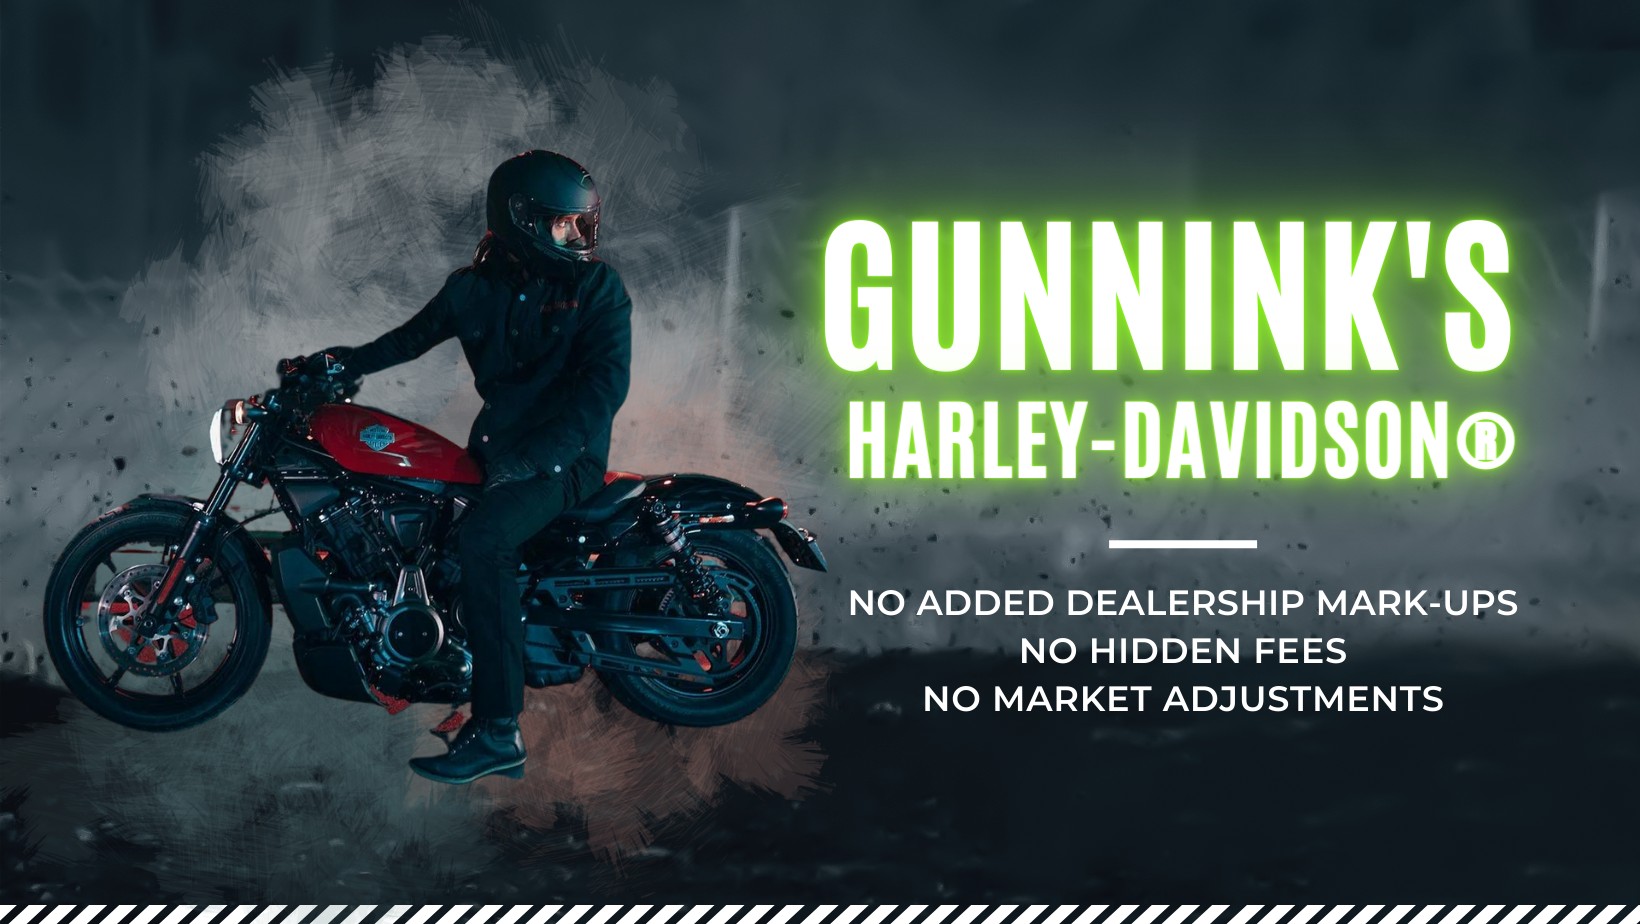 Gunnink's Harley-Davidson 10th Anniversary Demo Truck Days